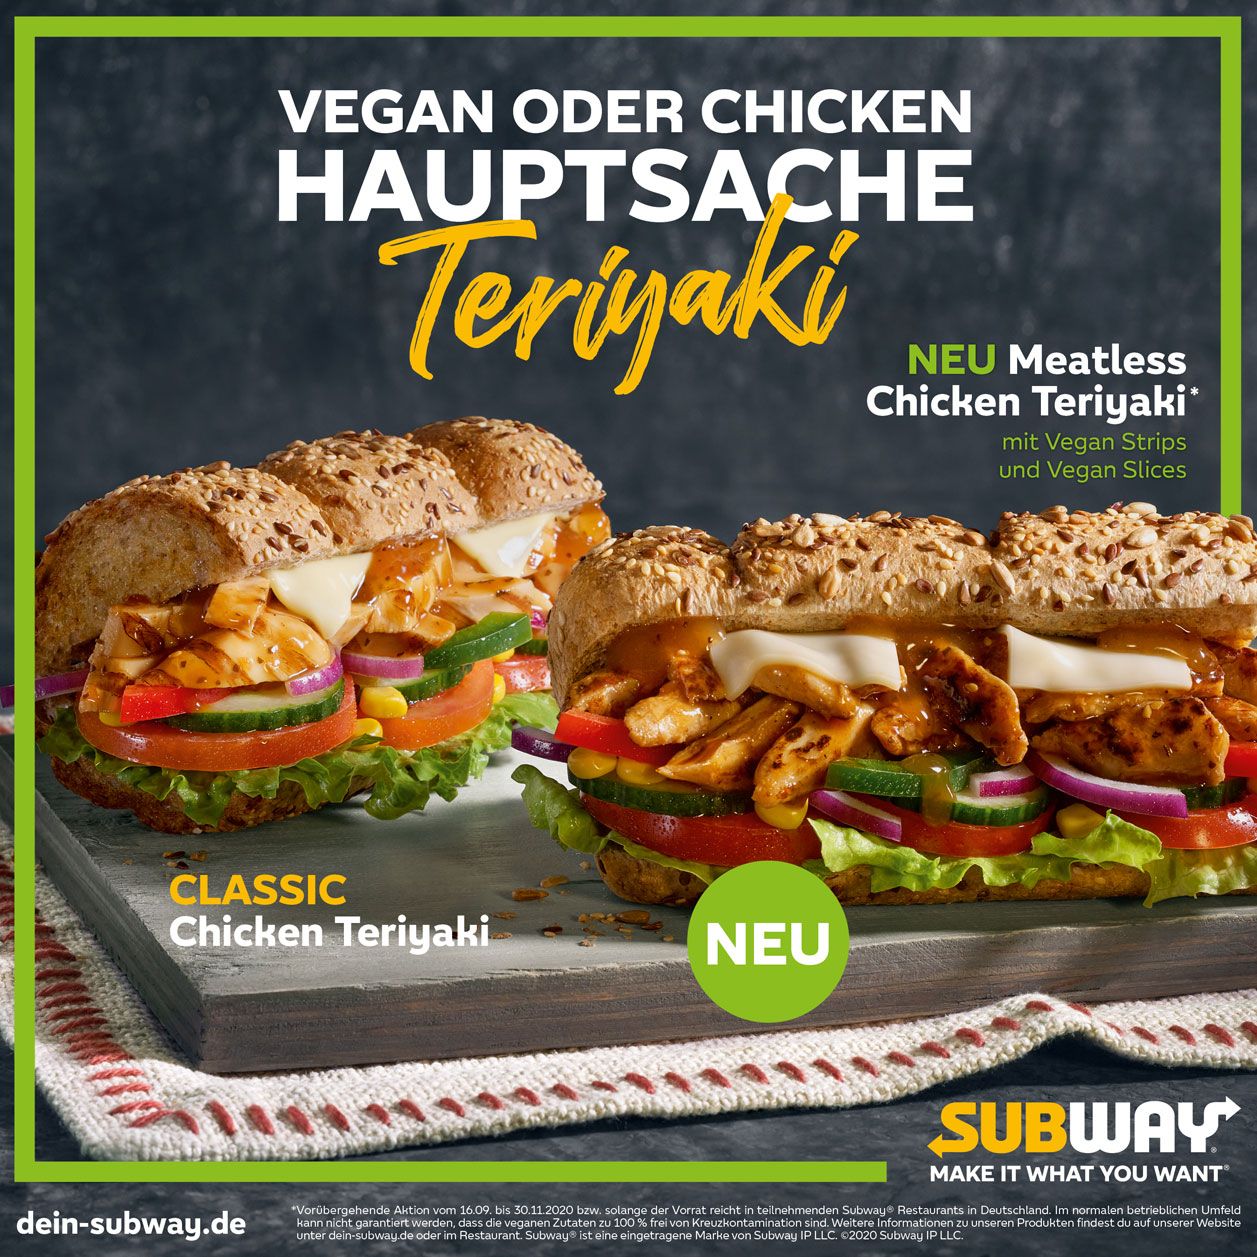 Das vegane Teriyaki-Sandwich sieht aus wie ein Klon vom klassischen Chicken-Teriyaki